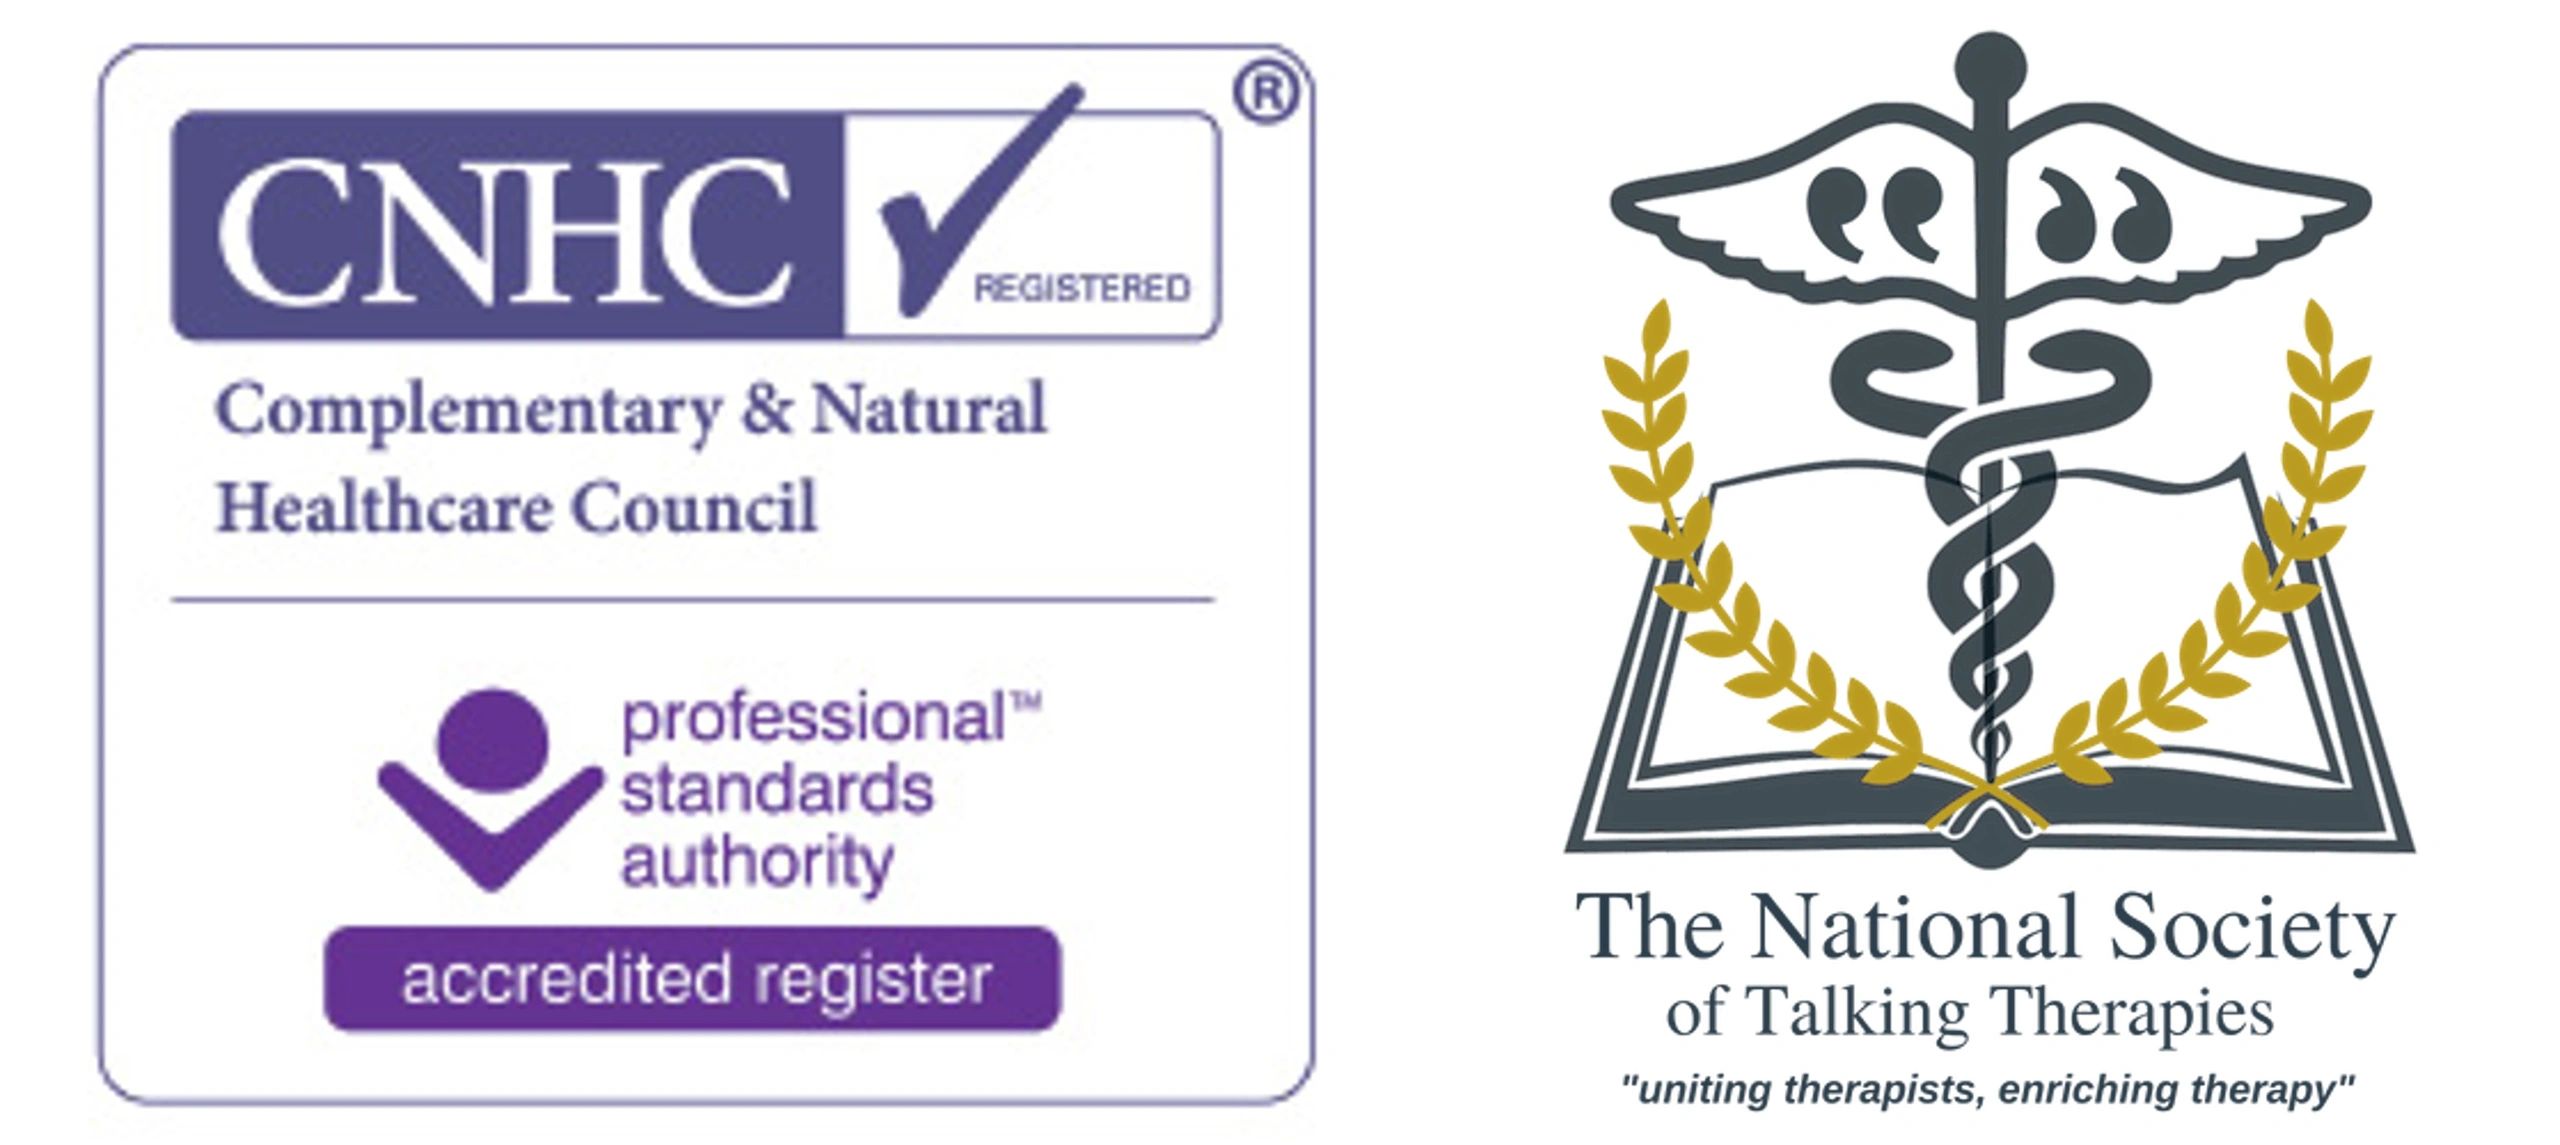 CNHC and NSTT Logos